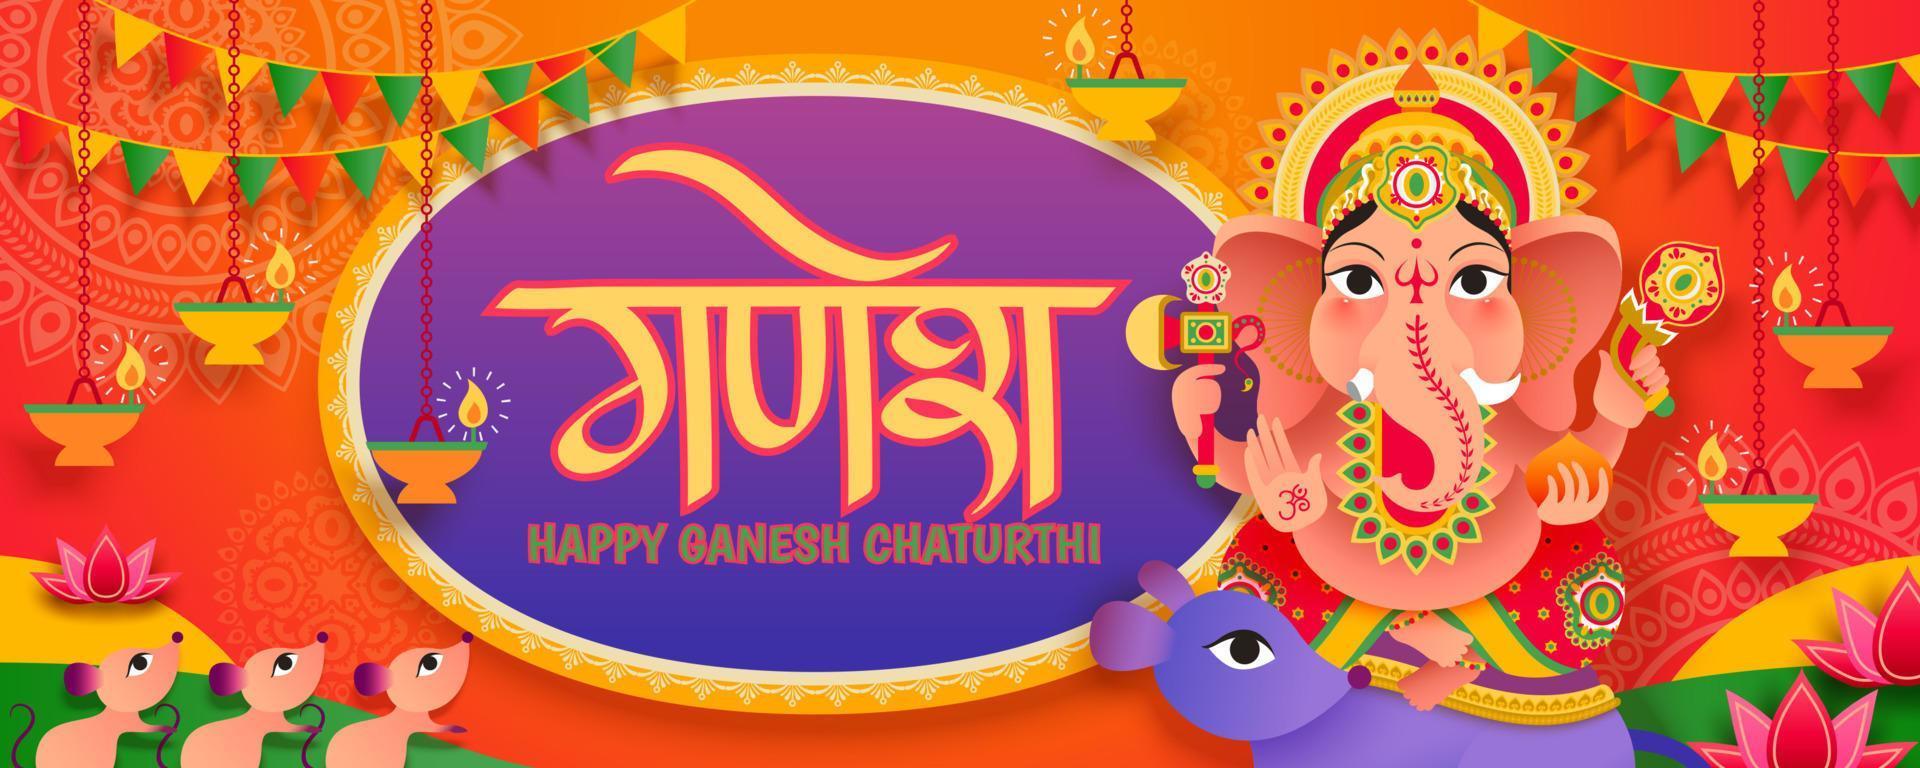 bannière du festival ganesh chaturthi avec le joli dieu hindou ganesha, ganesha écrit en mots hindi vecteur